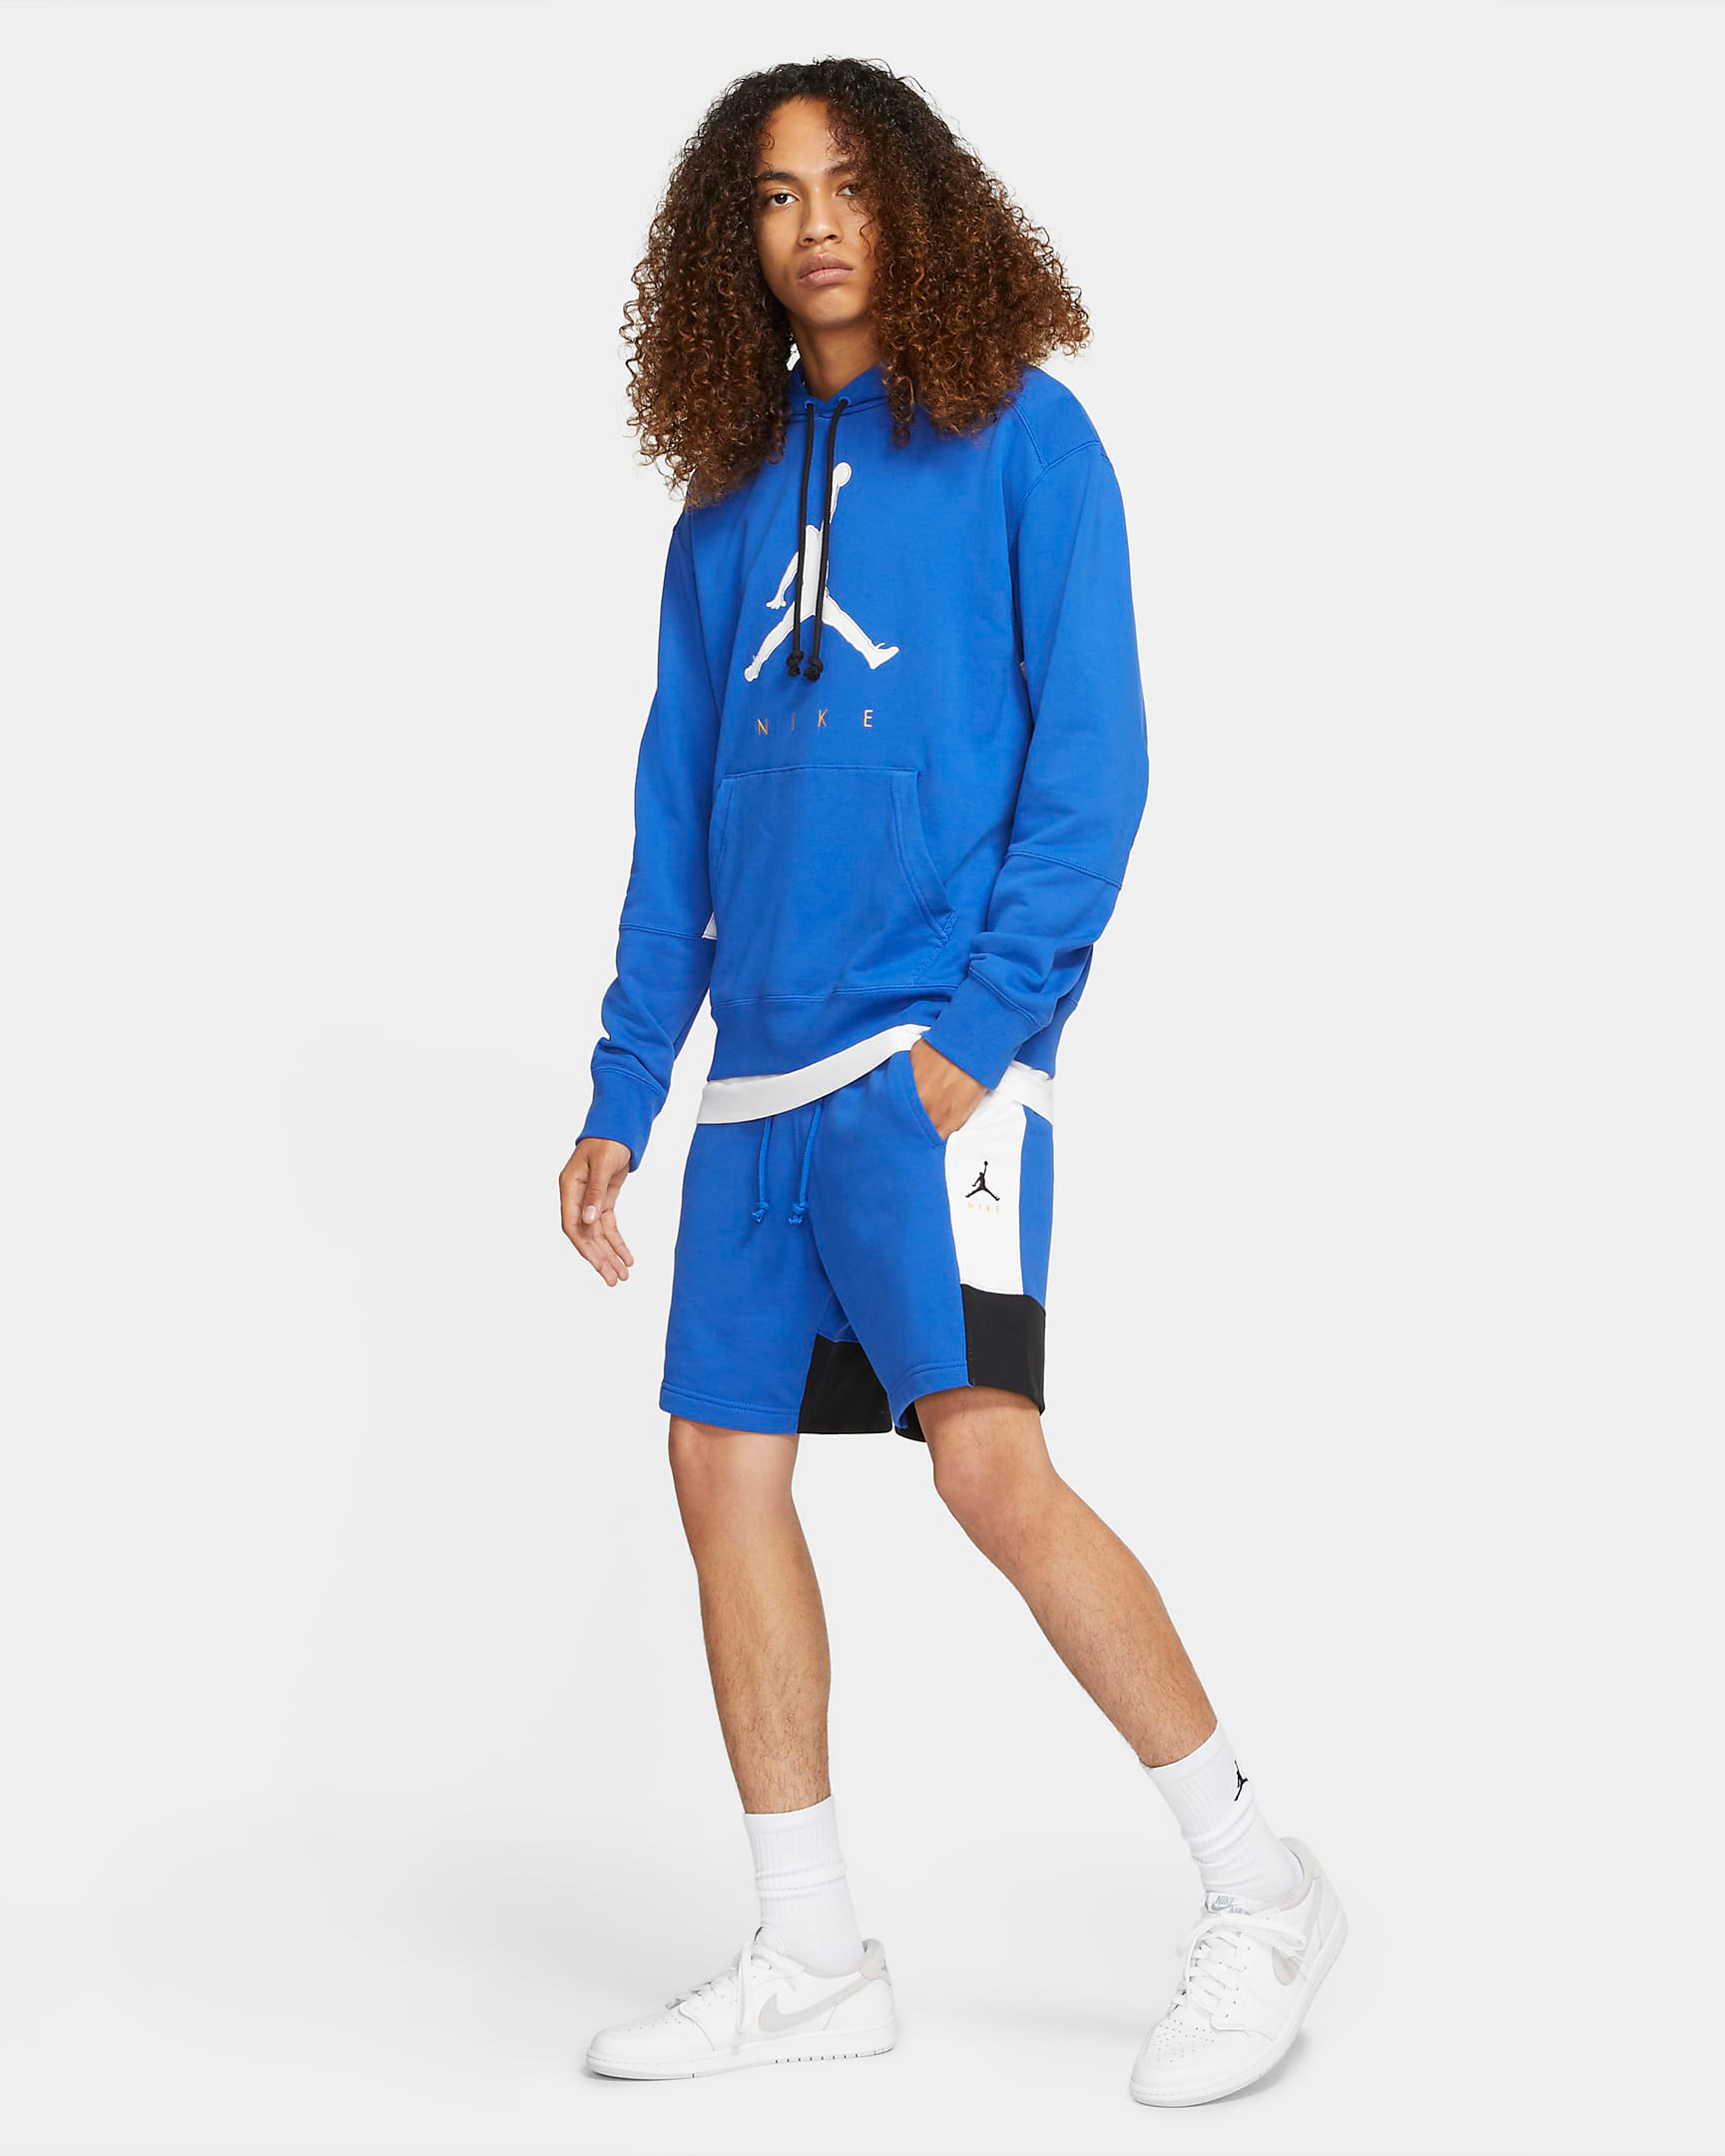 jordan-racer-blue-hoodie-shorts-outfit